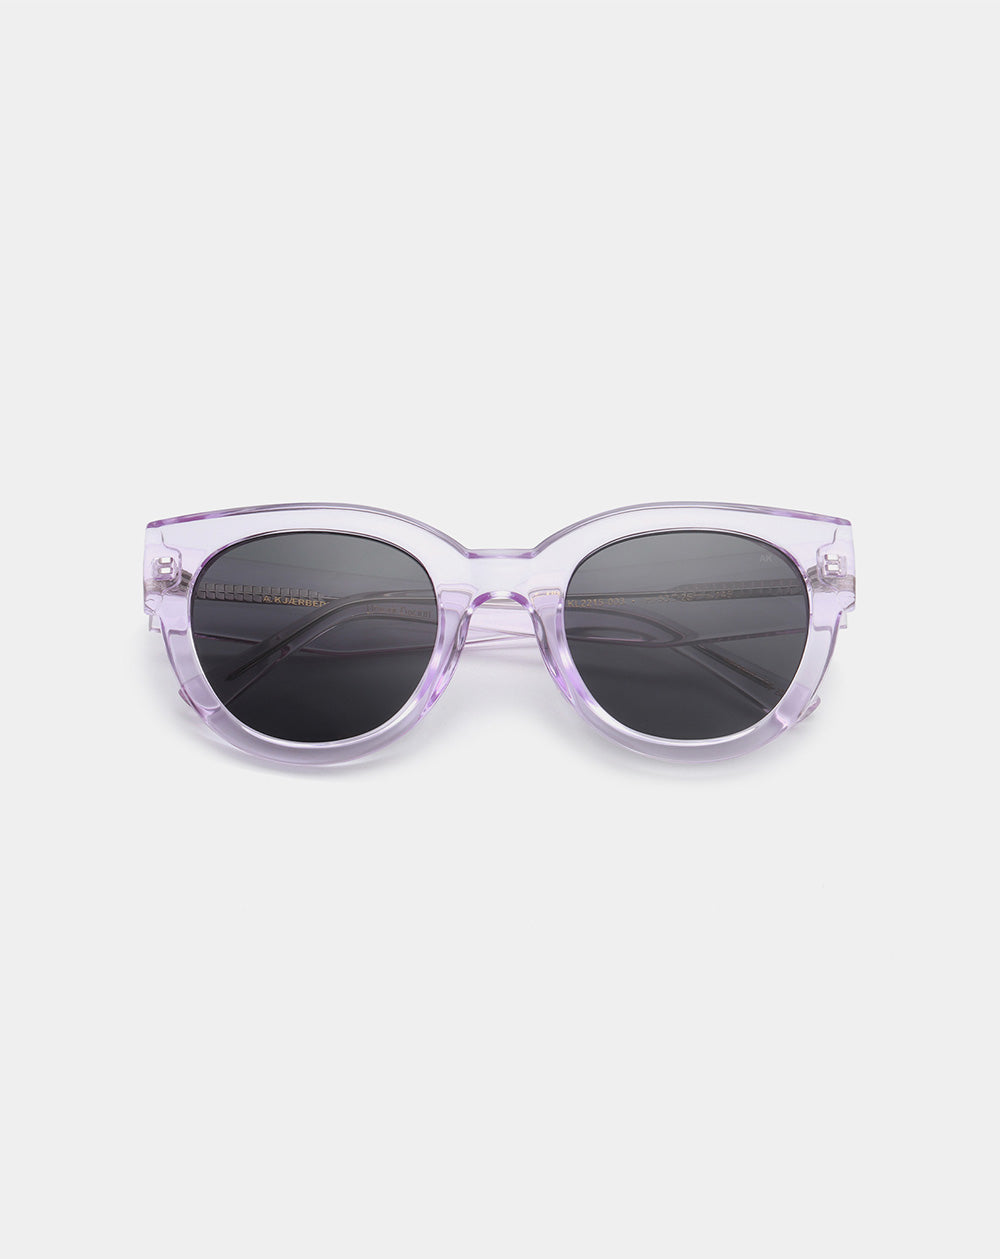 A.KJÆRBEDE - LILLY Sunglasses - Lavender Transparent